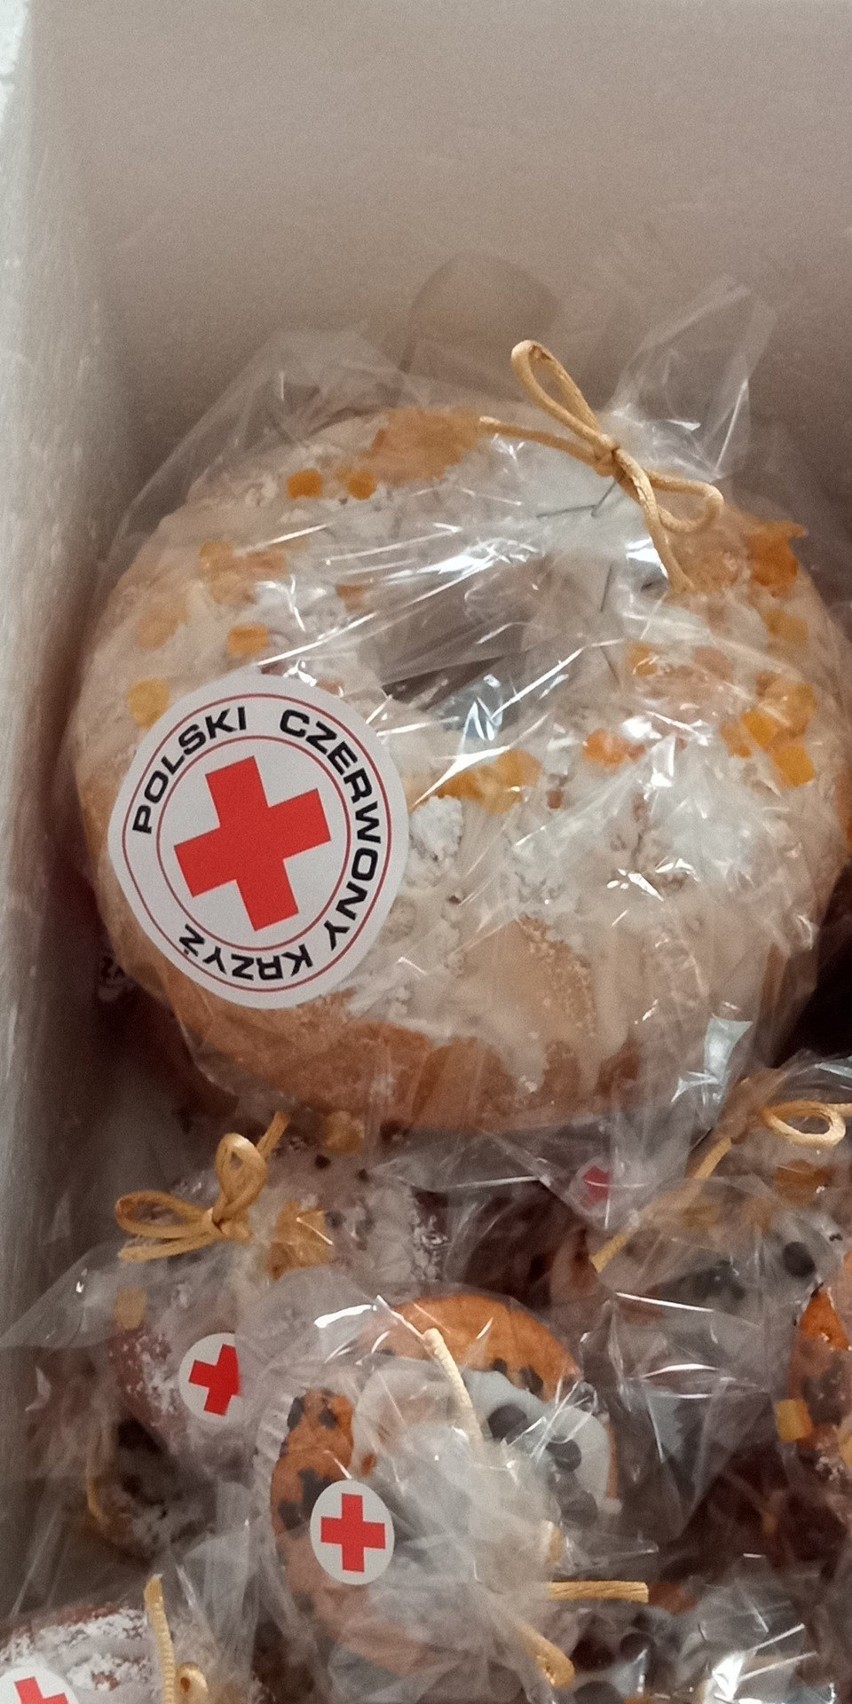 Świąteczne paczki dla uchodźców z Ukrainy od sandomierskiego oddziału Polskiego Czerwonego Krzyża. Co w nich było? Zobacz zdjęcia 